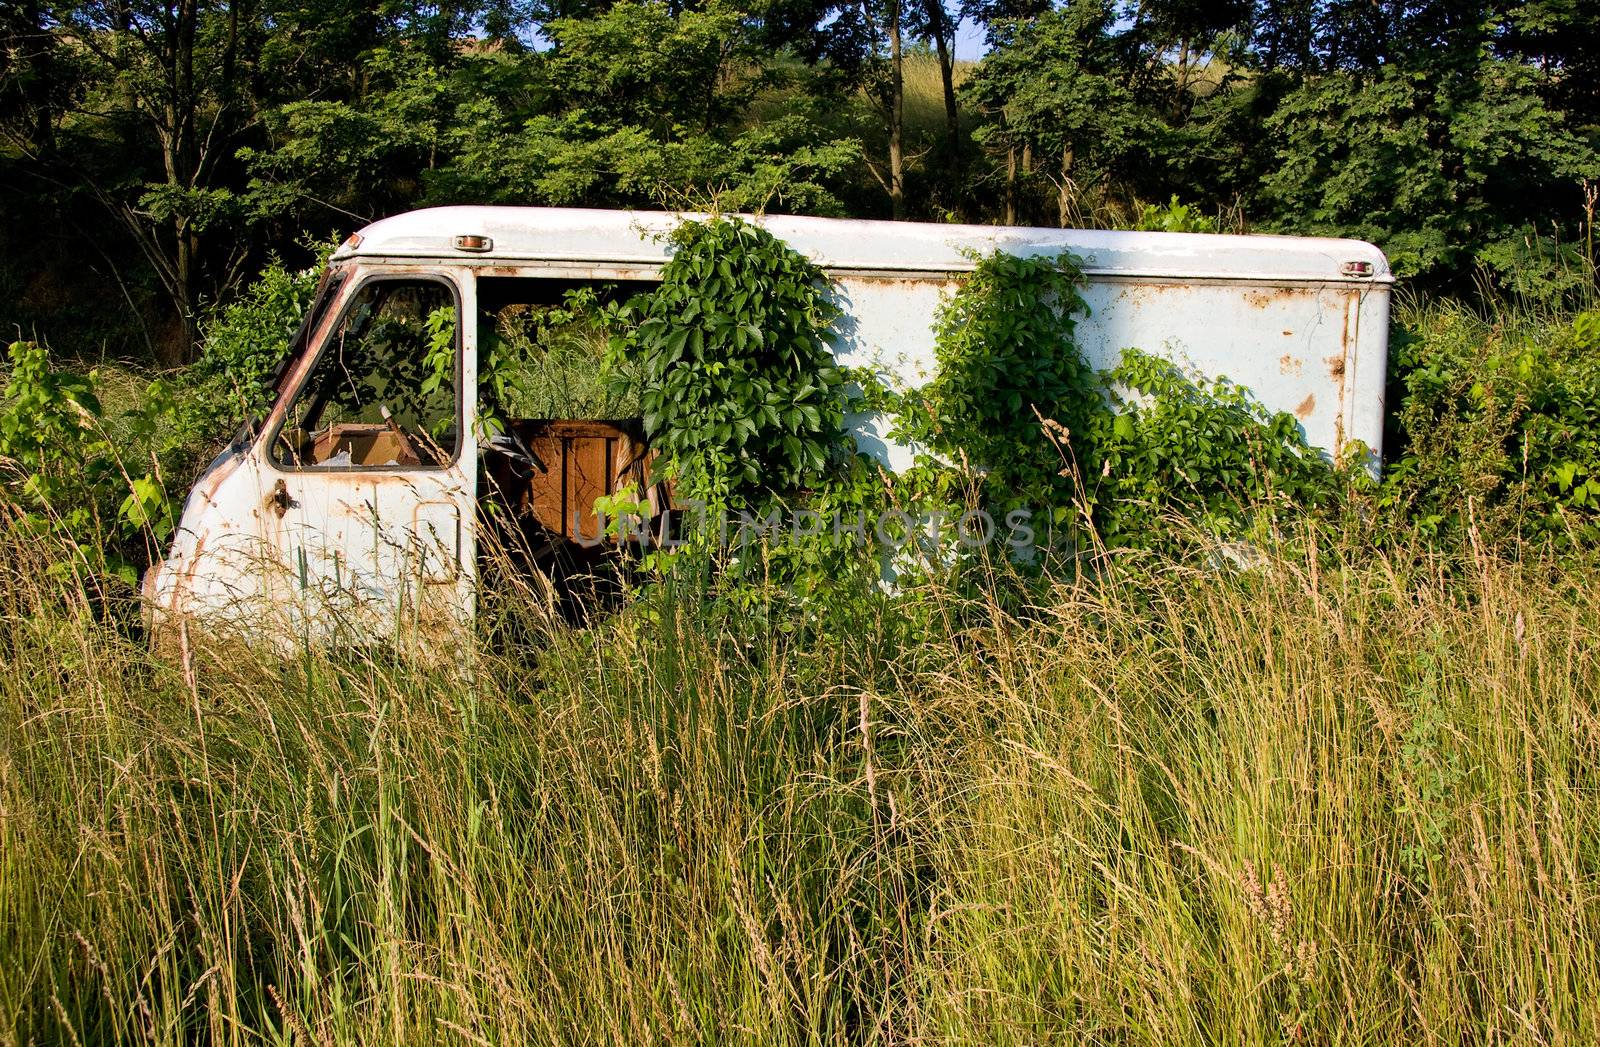 Rusty van in deep grass by steheap